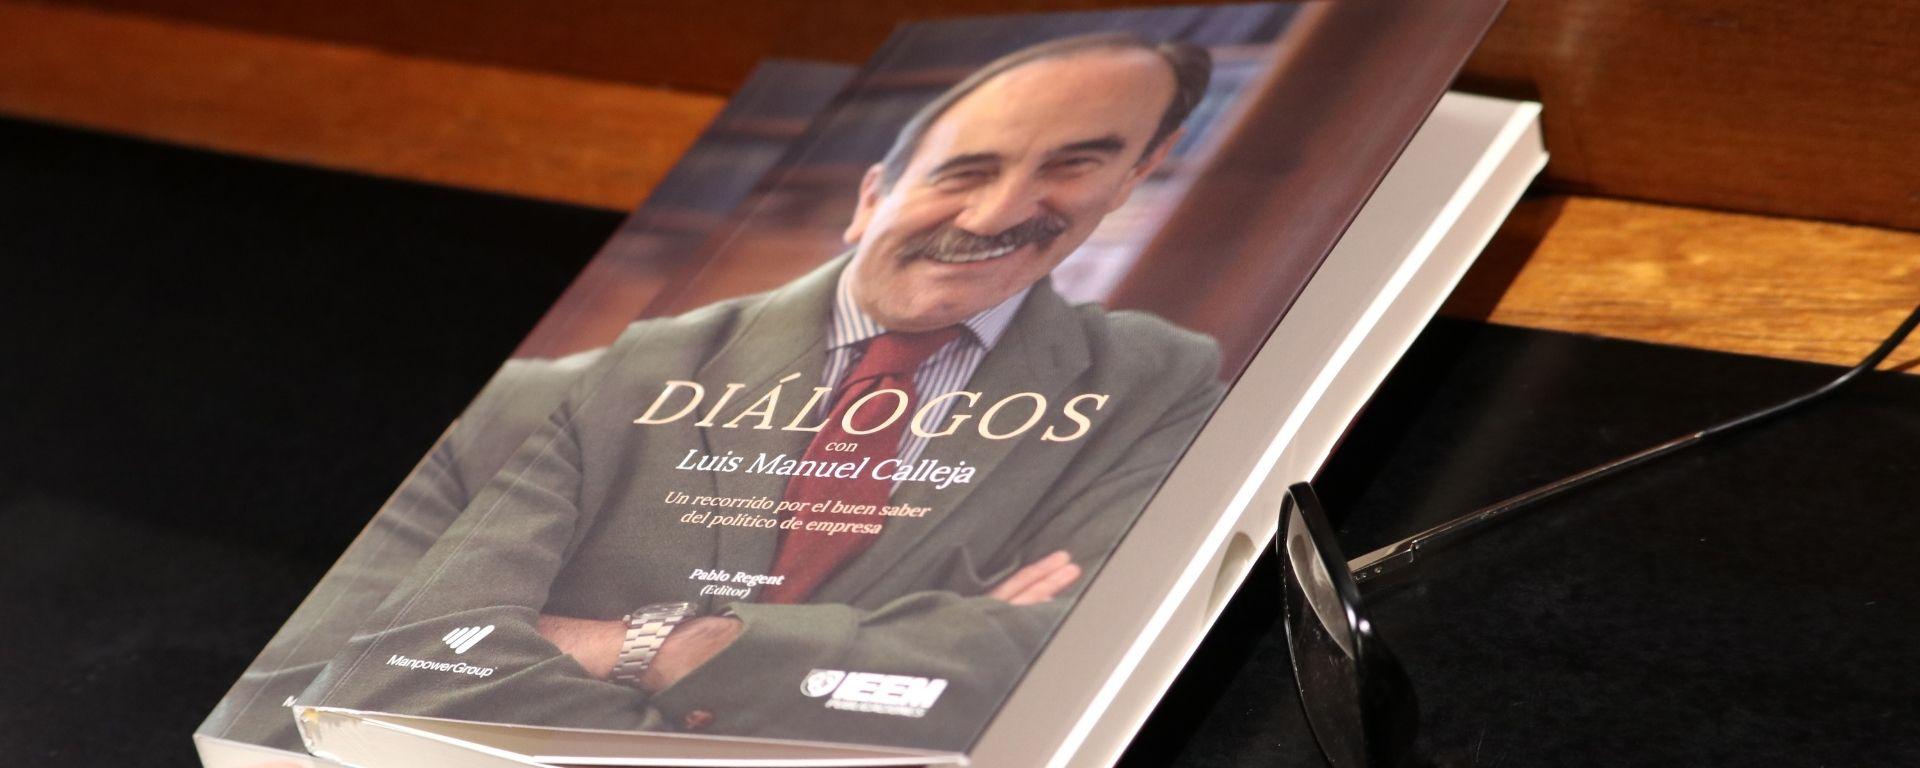 Lanzamiento del libro “Diálogos con Luis Manuel Calleja, un recorrido por el buen saber del político de empresa"